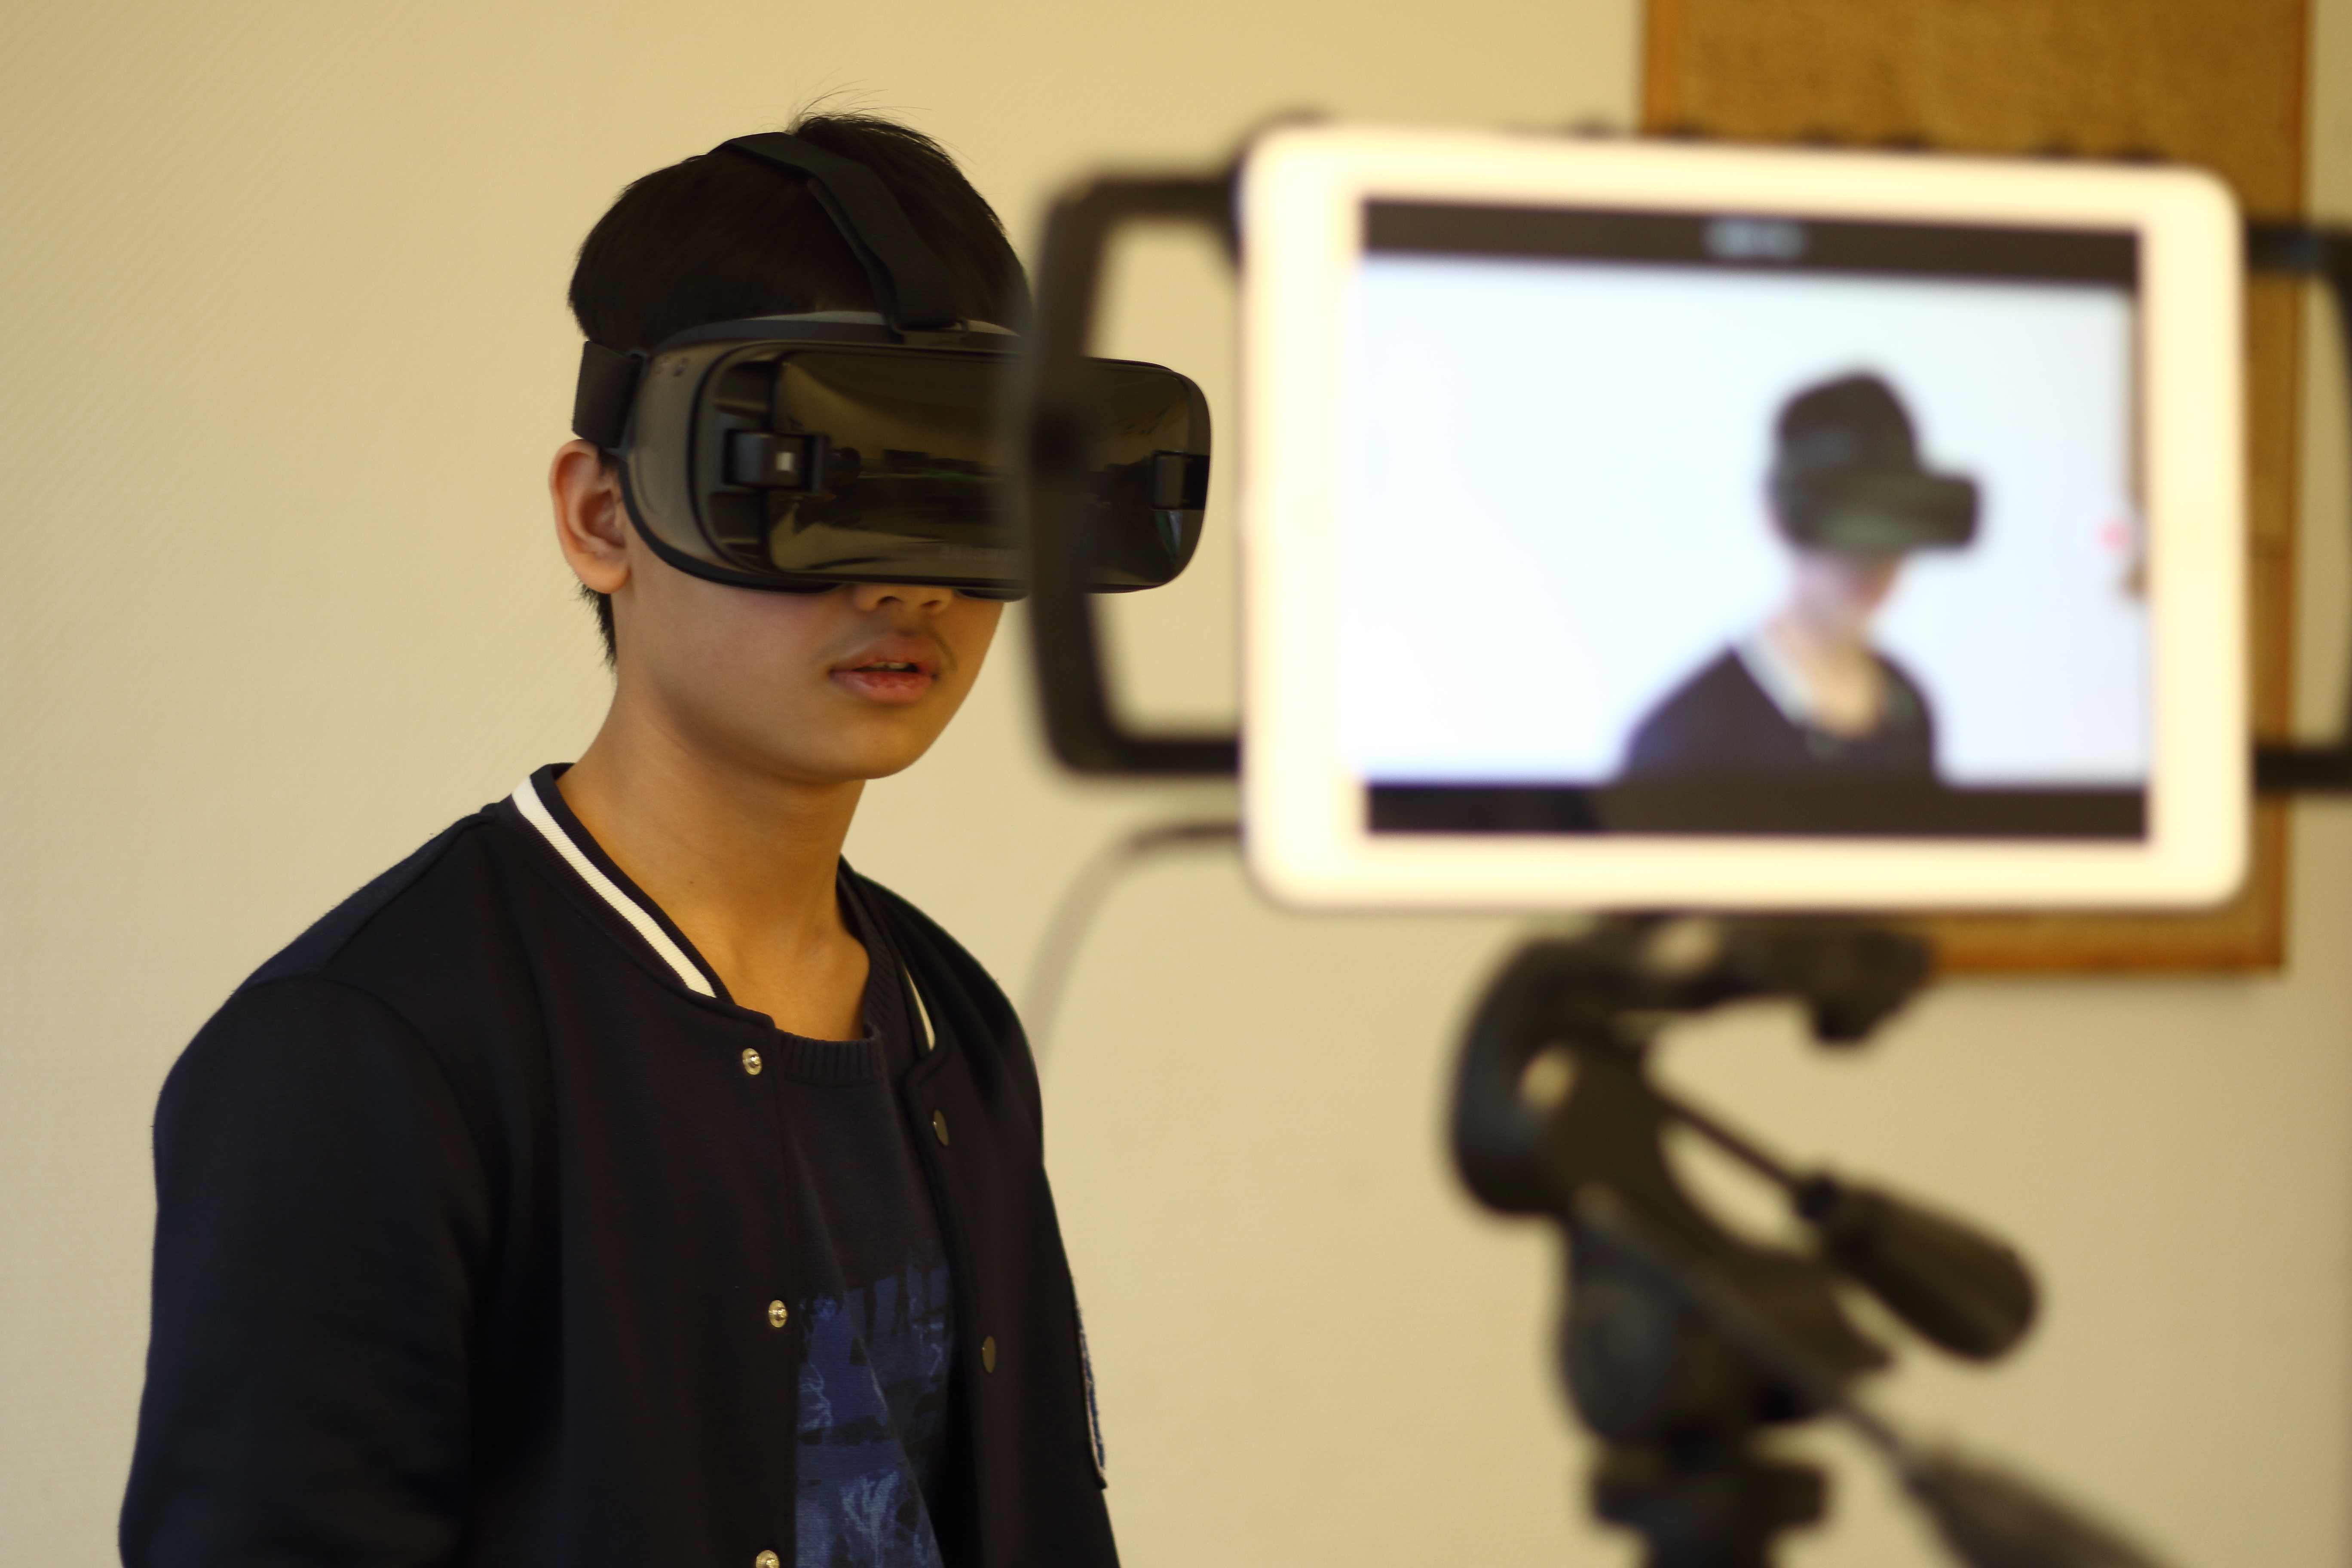 Ein Junge trägt eine VR Brille, gleichzeitig wird er von einem Tablet fotografiert beziehungsweis wird ein Video von ihm aufgenommen.